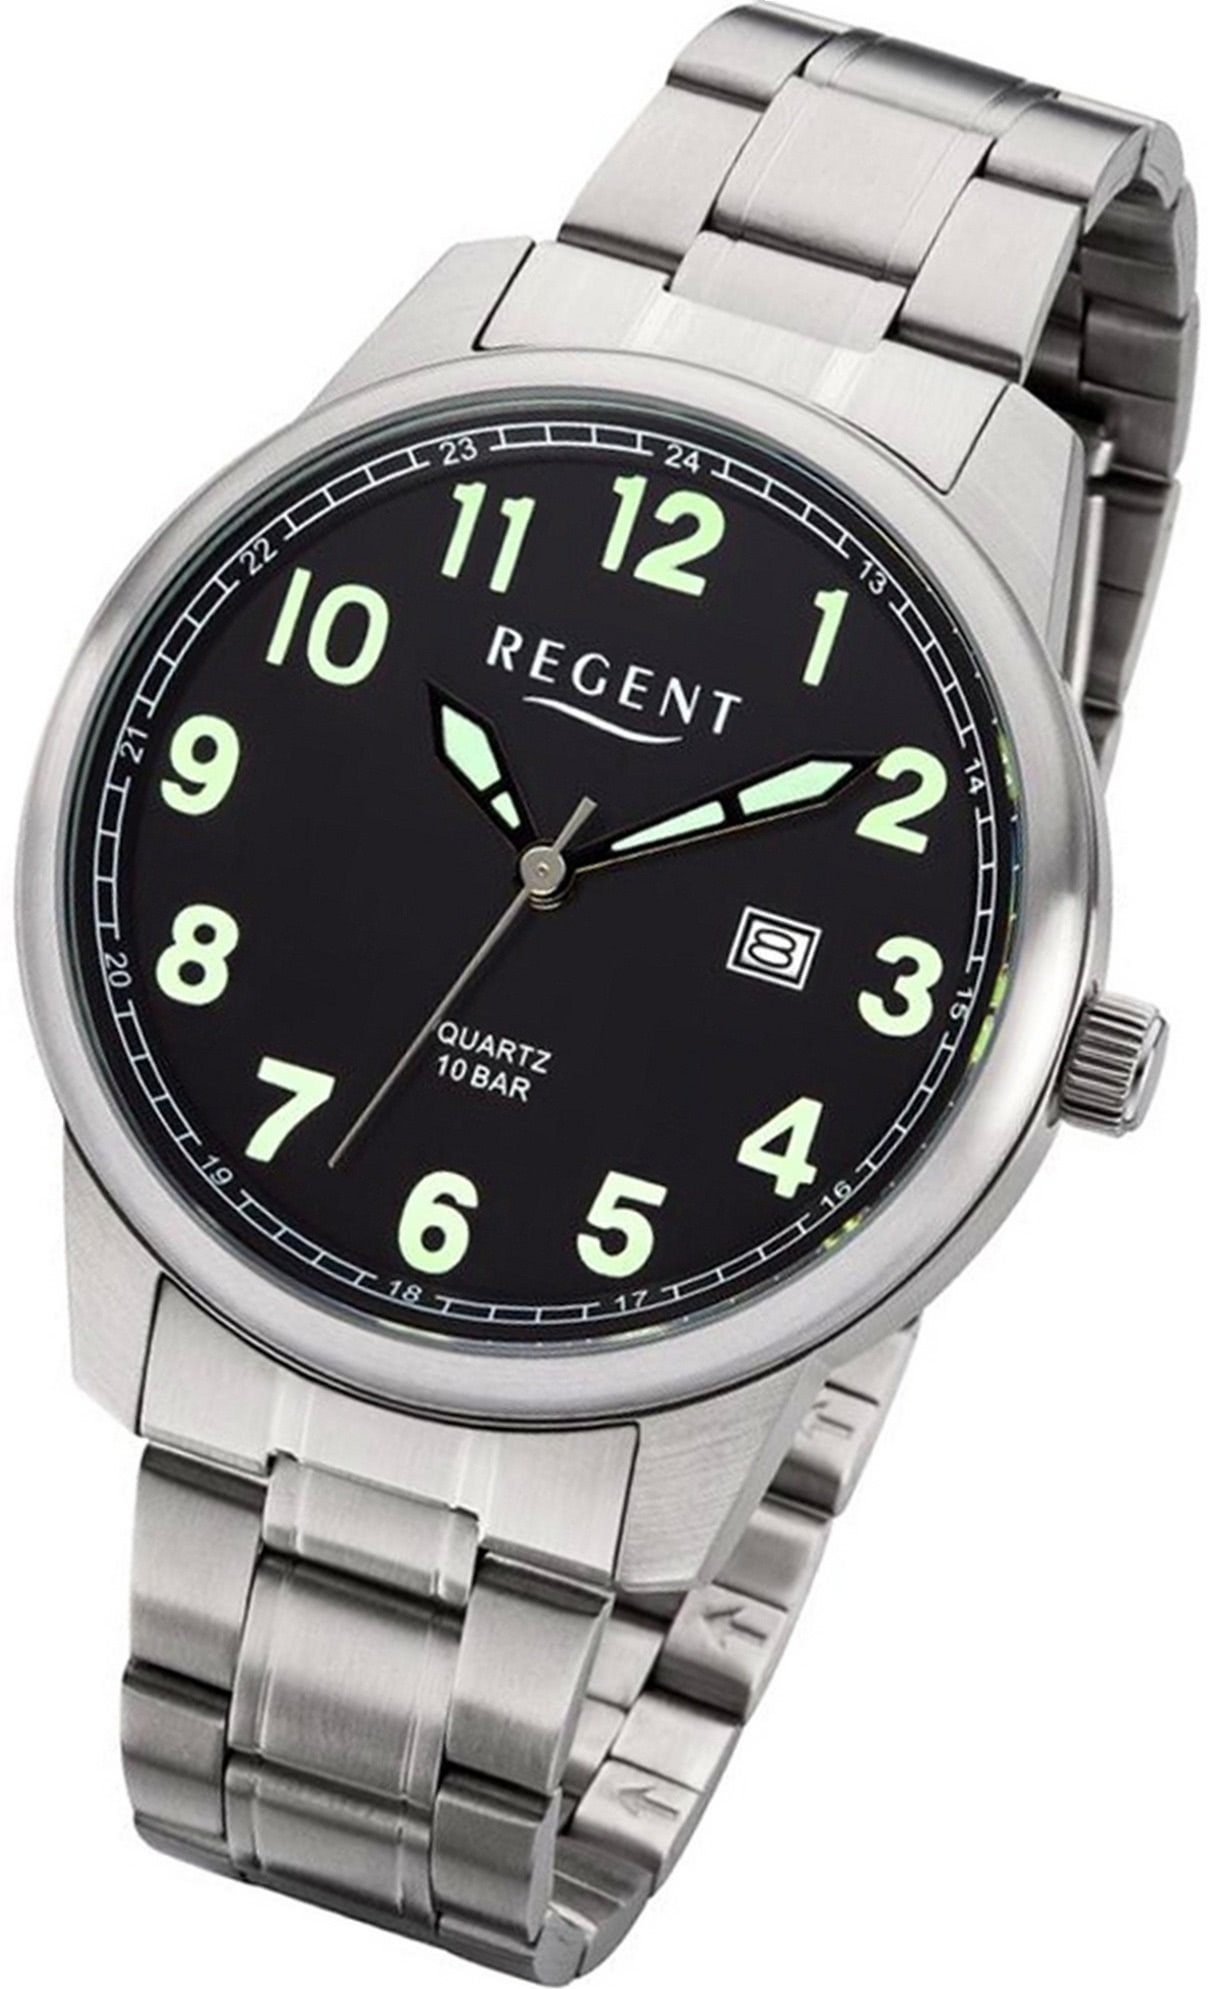 Regent Quarzuhr Regent Metall Herren Uhr F-1189 Analog, Herrenuhr Metallarmband silber, rundes Gehäuse, groß (ca. 41mm)